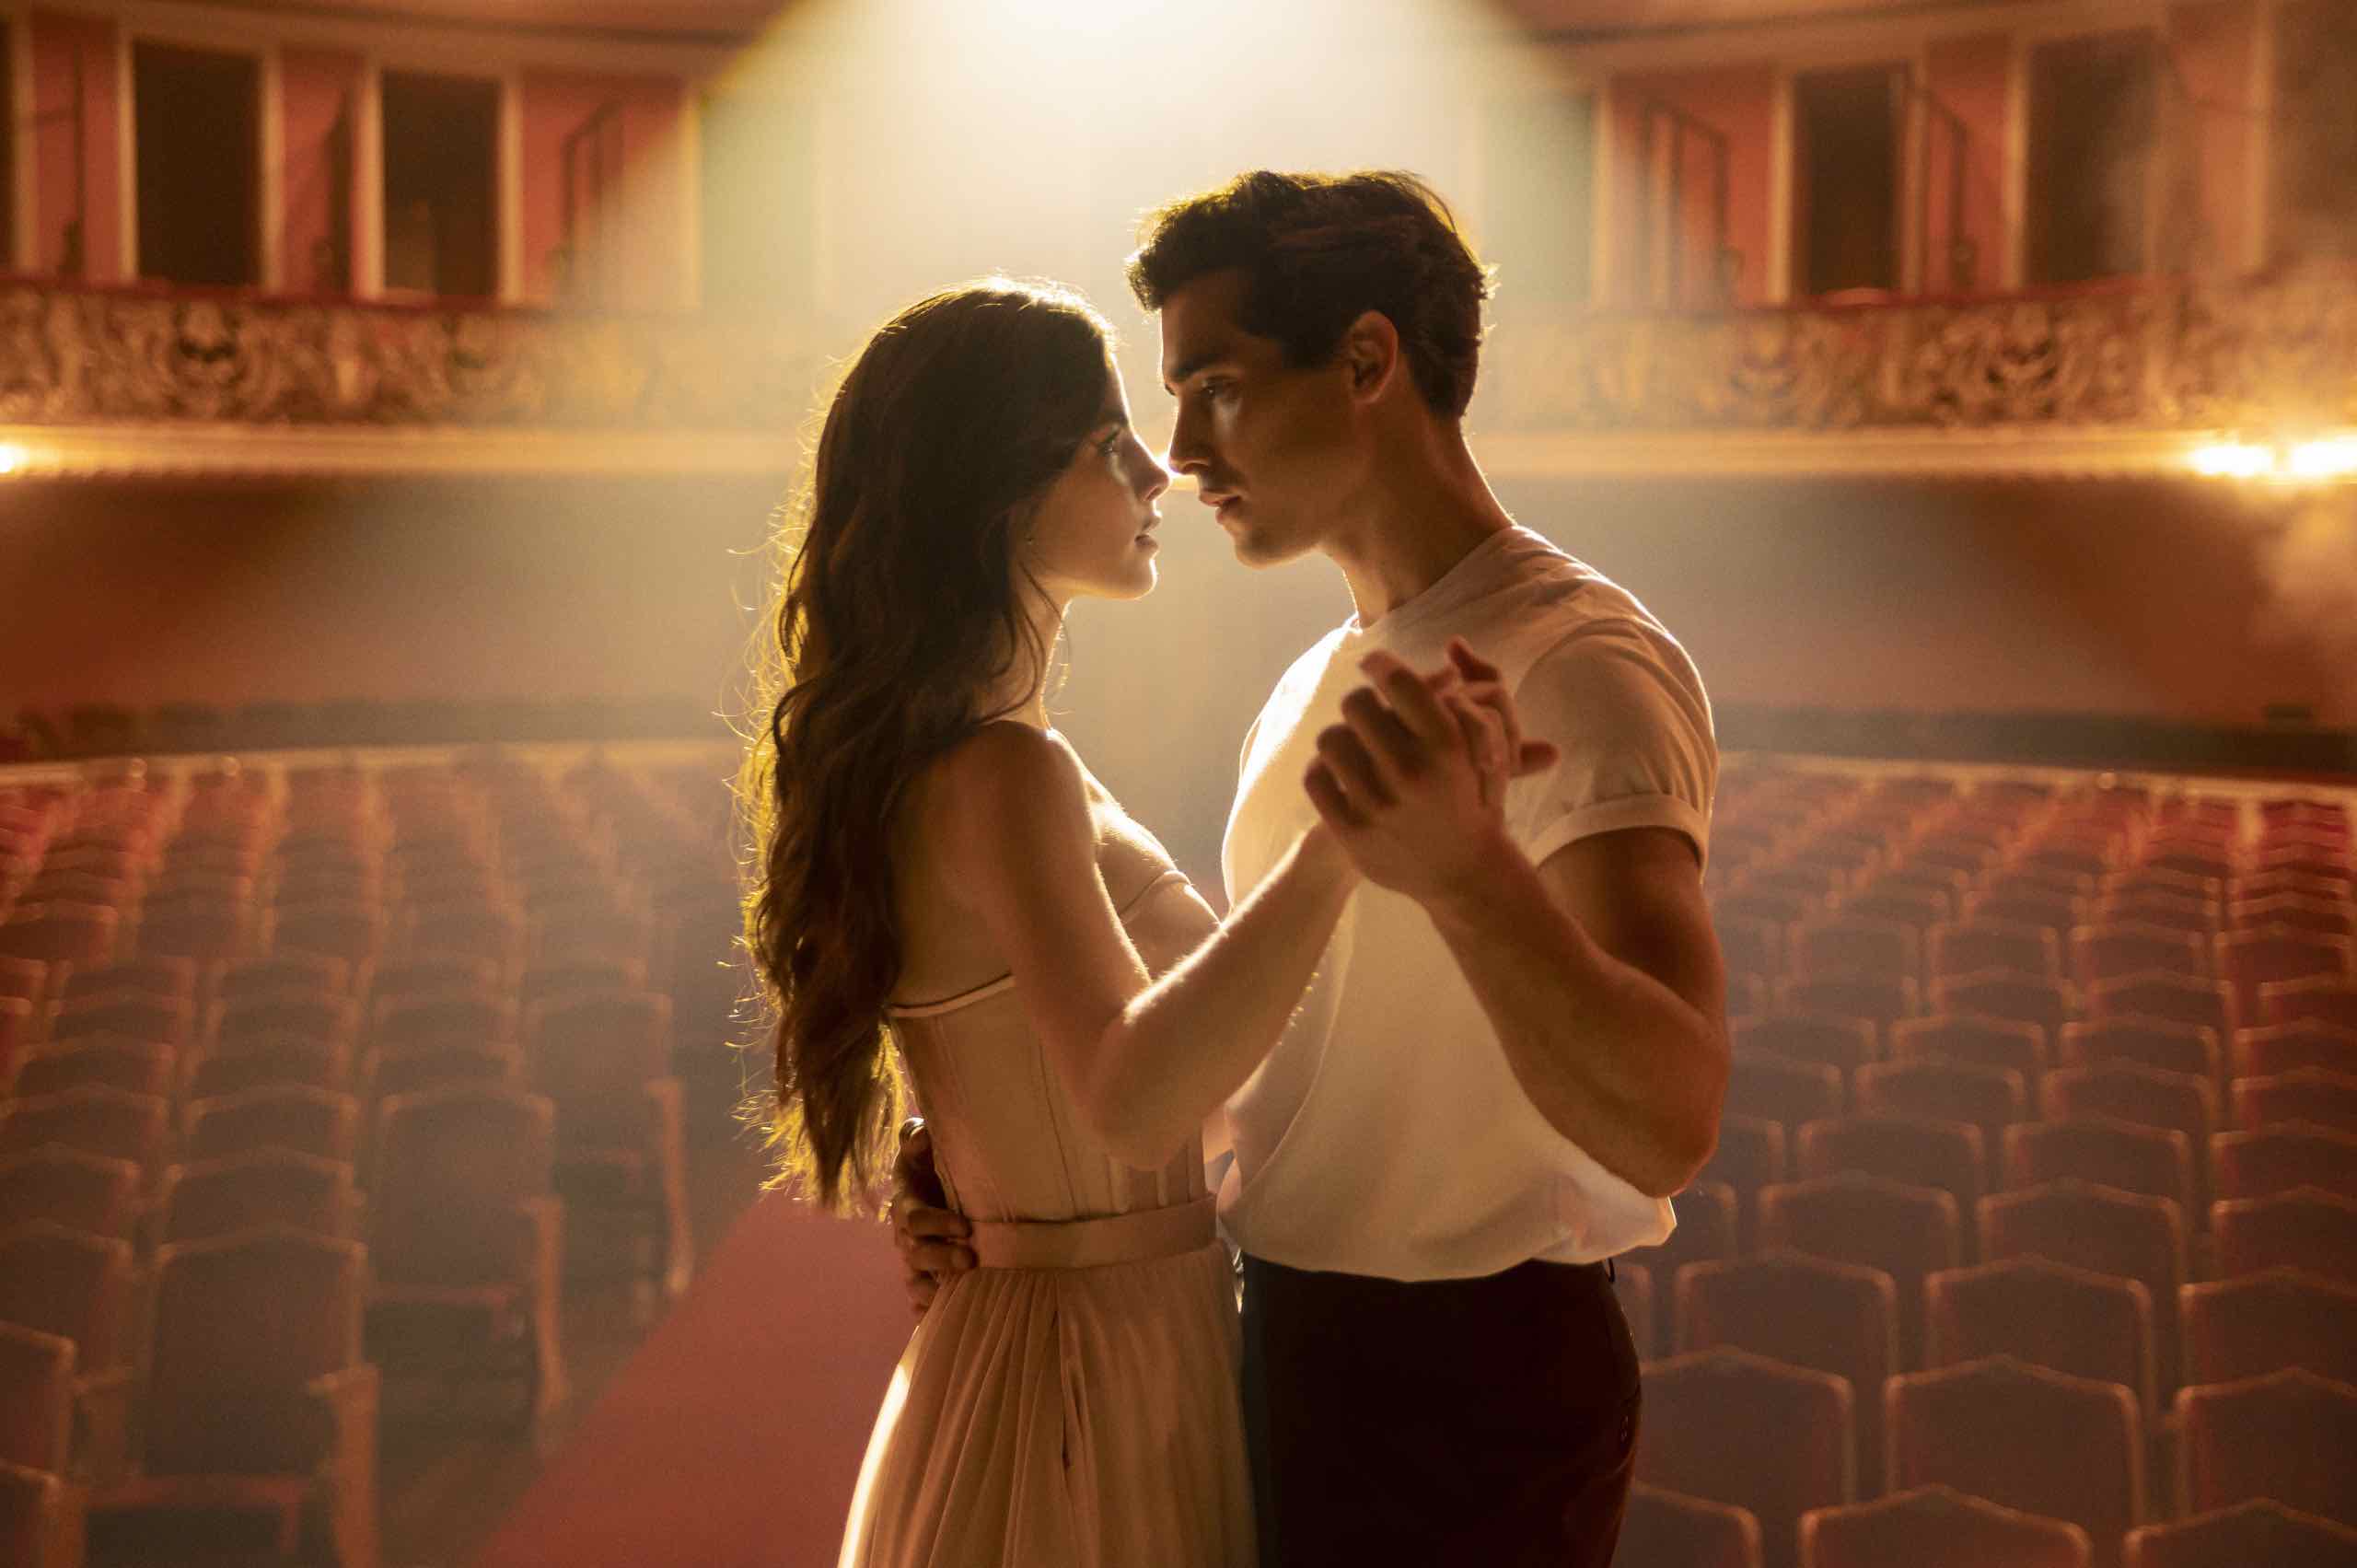 par dela lunivers netflix - Par delà l'univers : ce drame romantique brésilien dans la veine de "Toujours plus beau" arrive en octobre sur Netflix